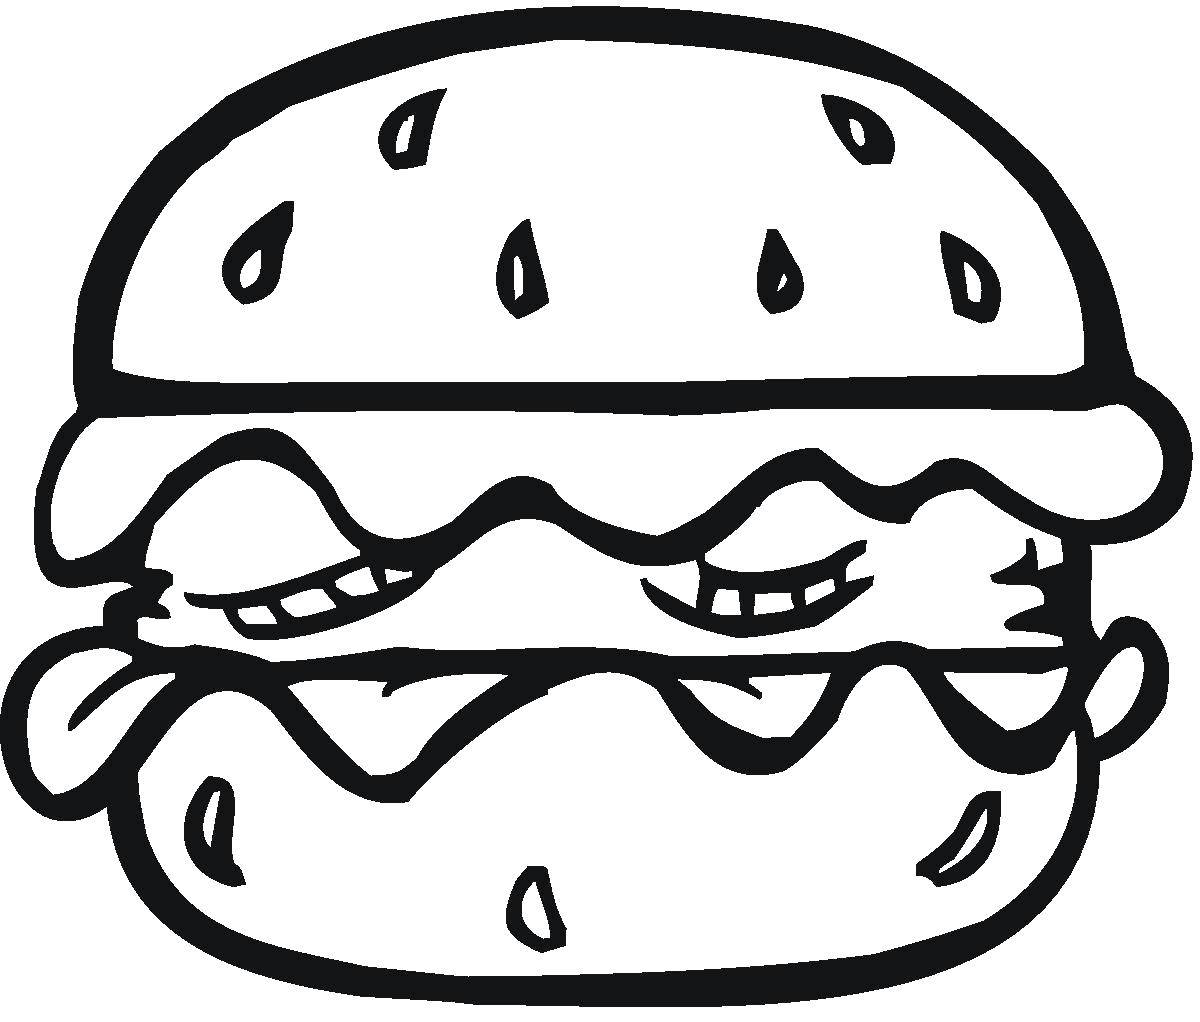 Coloring Hamburger. Category The food. Tags:  food, hamburger, Burger.